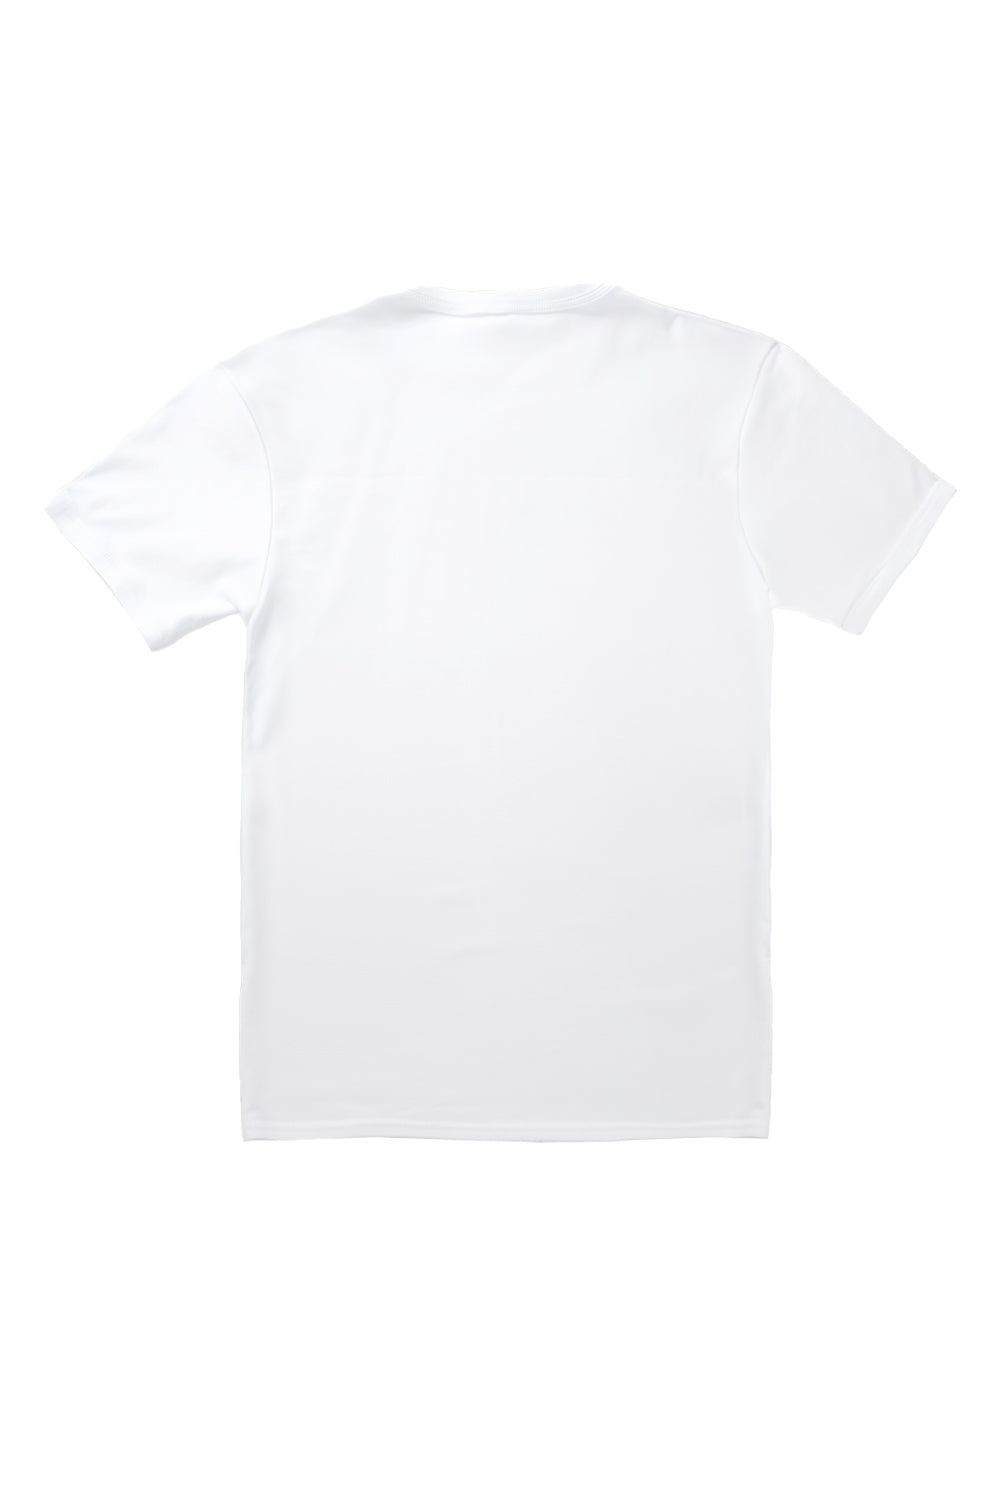 Vintage Rose T-Shirt in White (Custom Packs)